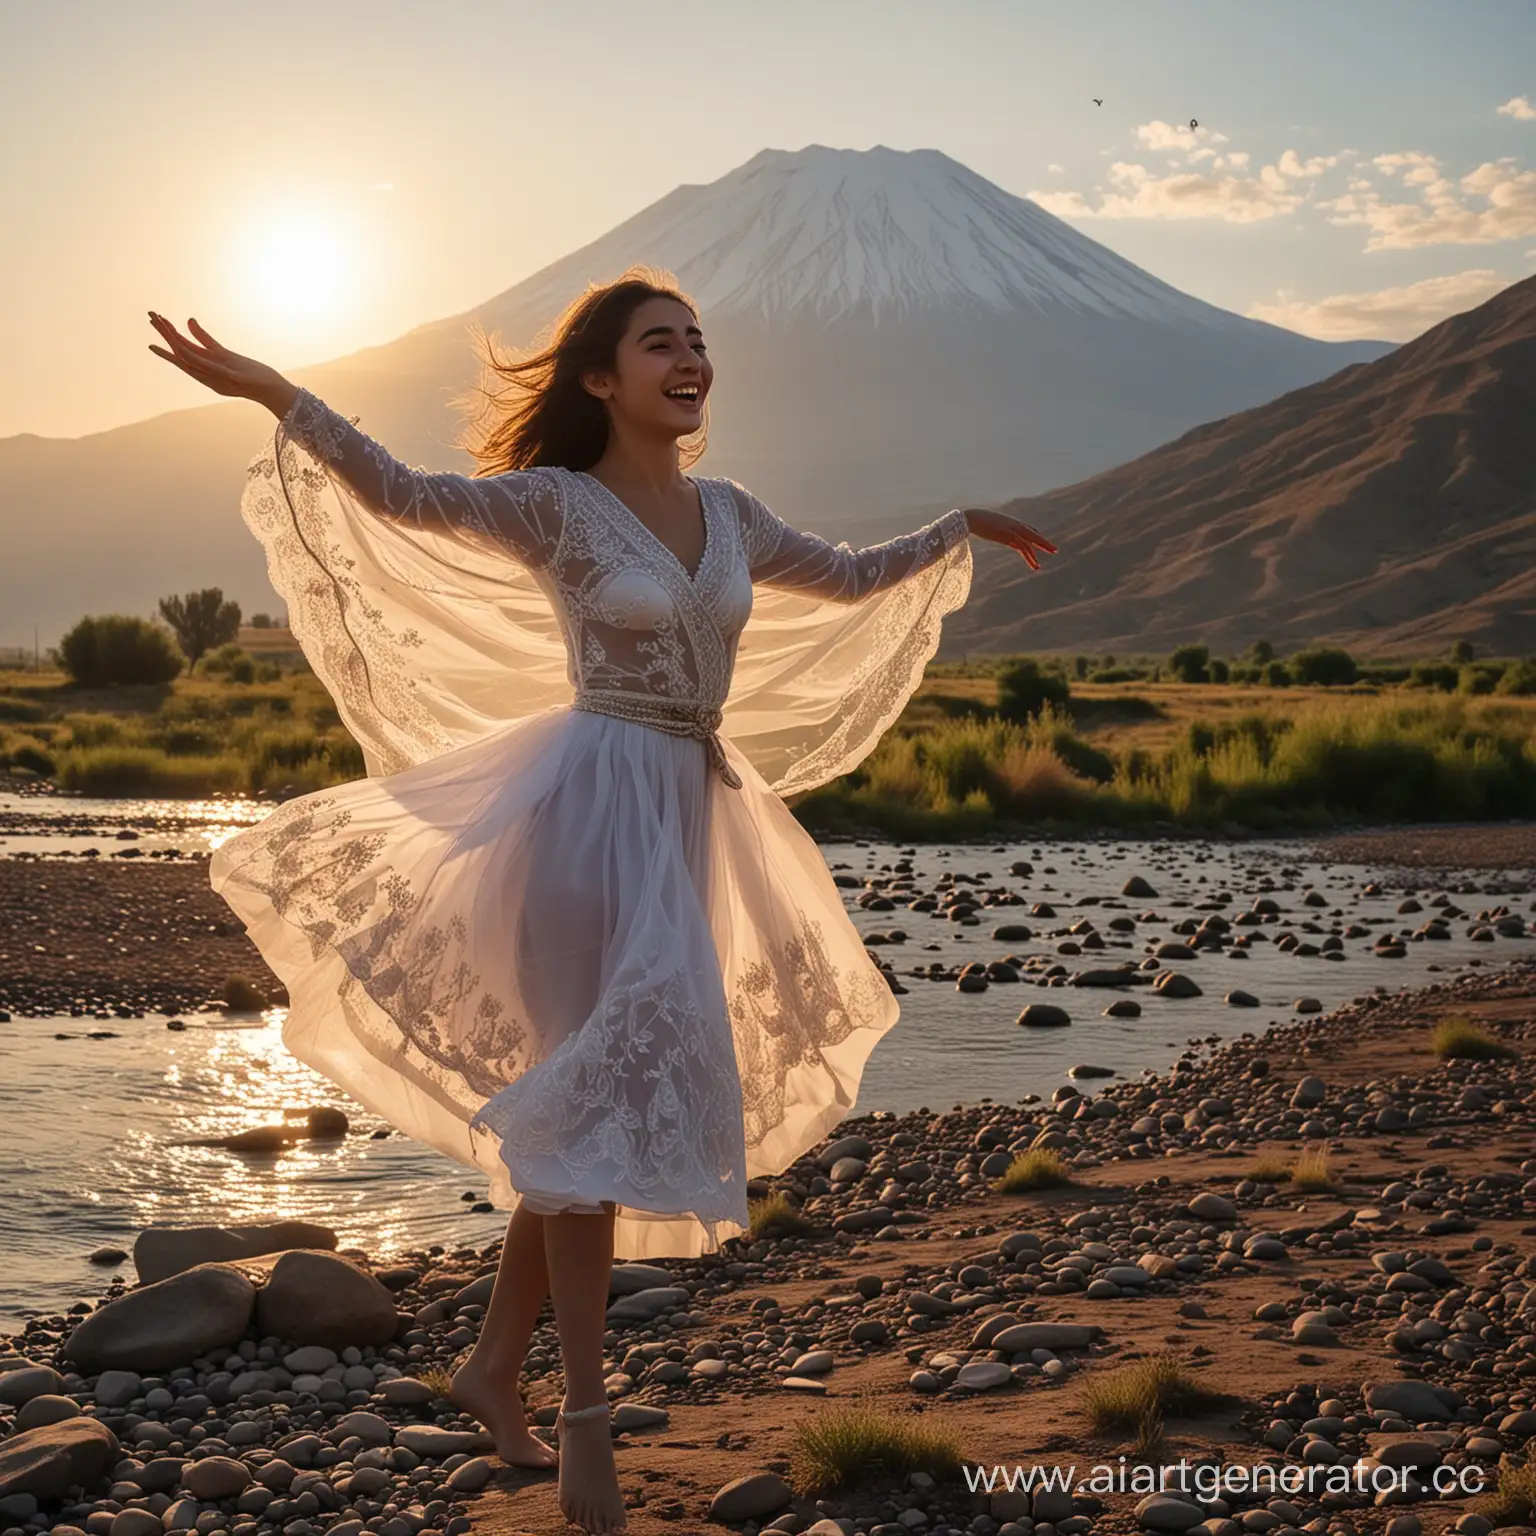 В Армении на фоне горы Арарат на берегу реки Кура, в лучах утренней зари танцует девушка как прекрасная царица. В её улыбке радость и вдохновенье. Как птица в полете, она нежно парит. Её шаги плавны и легки, воплощение грации.